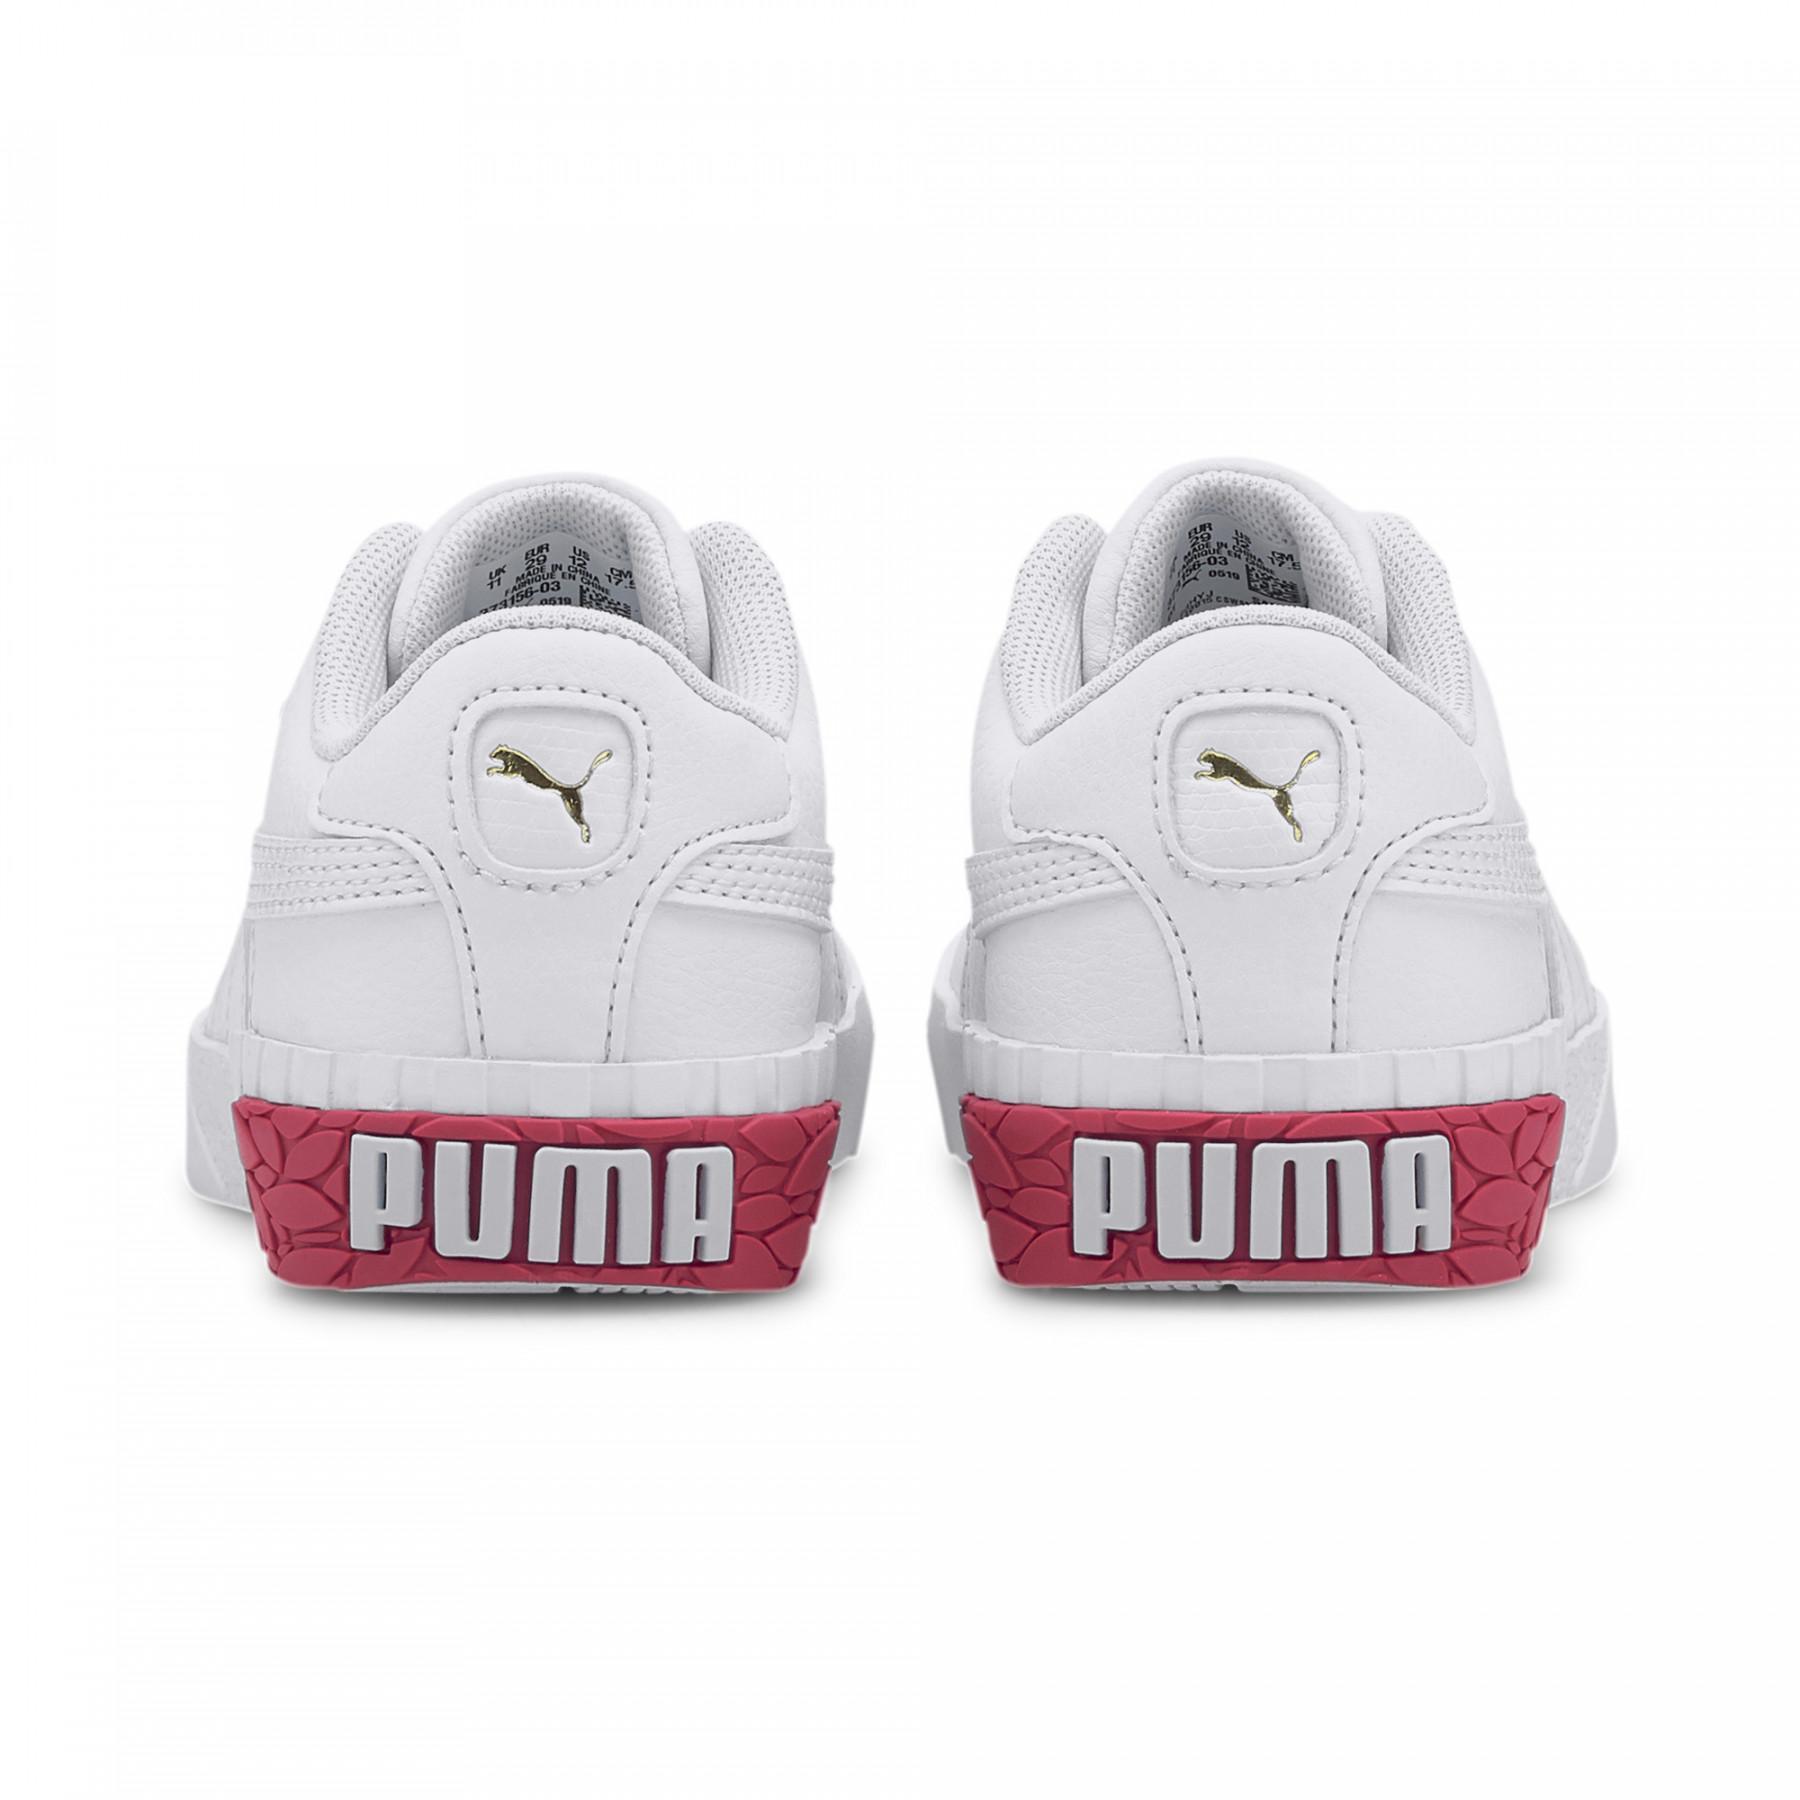 Girl's sneakers Puma Cali PS